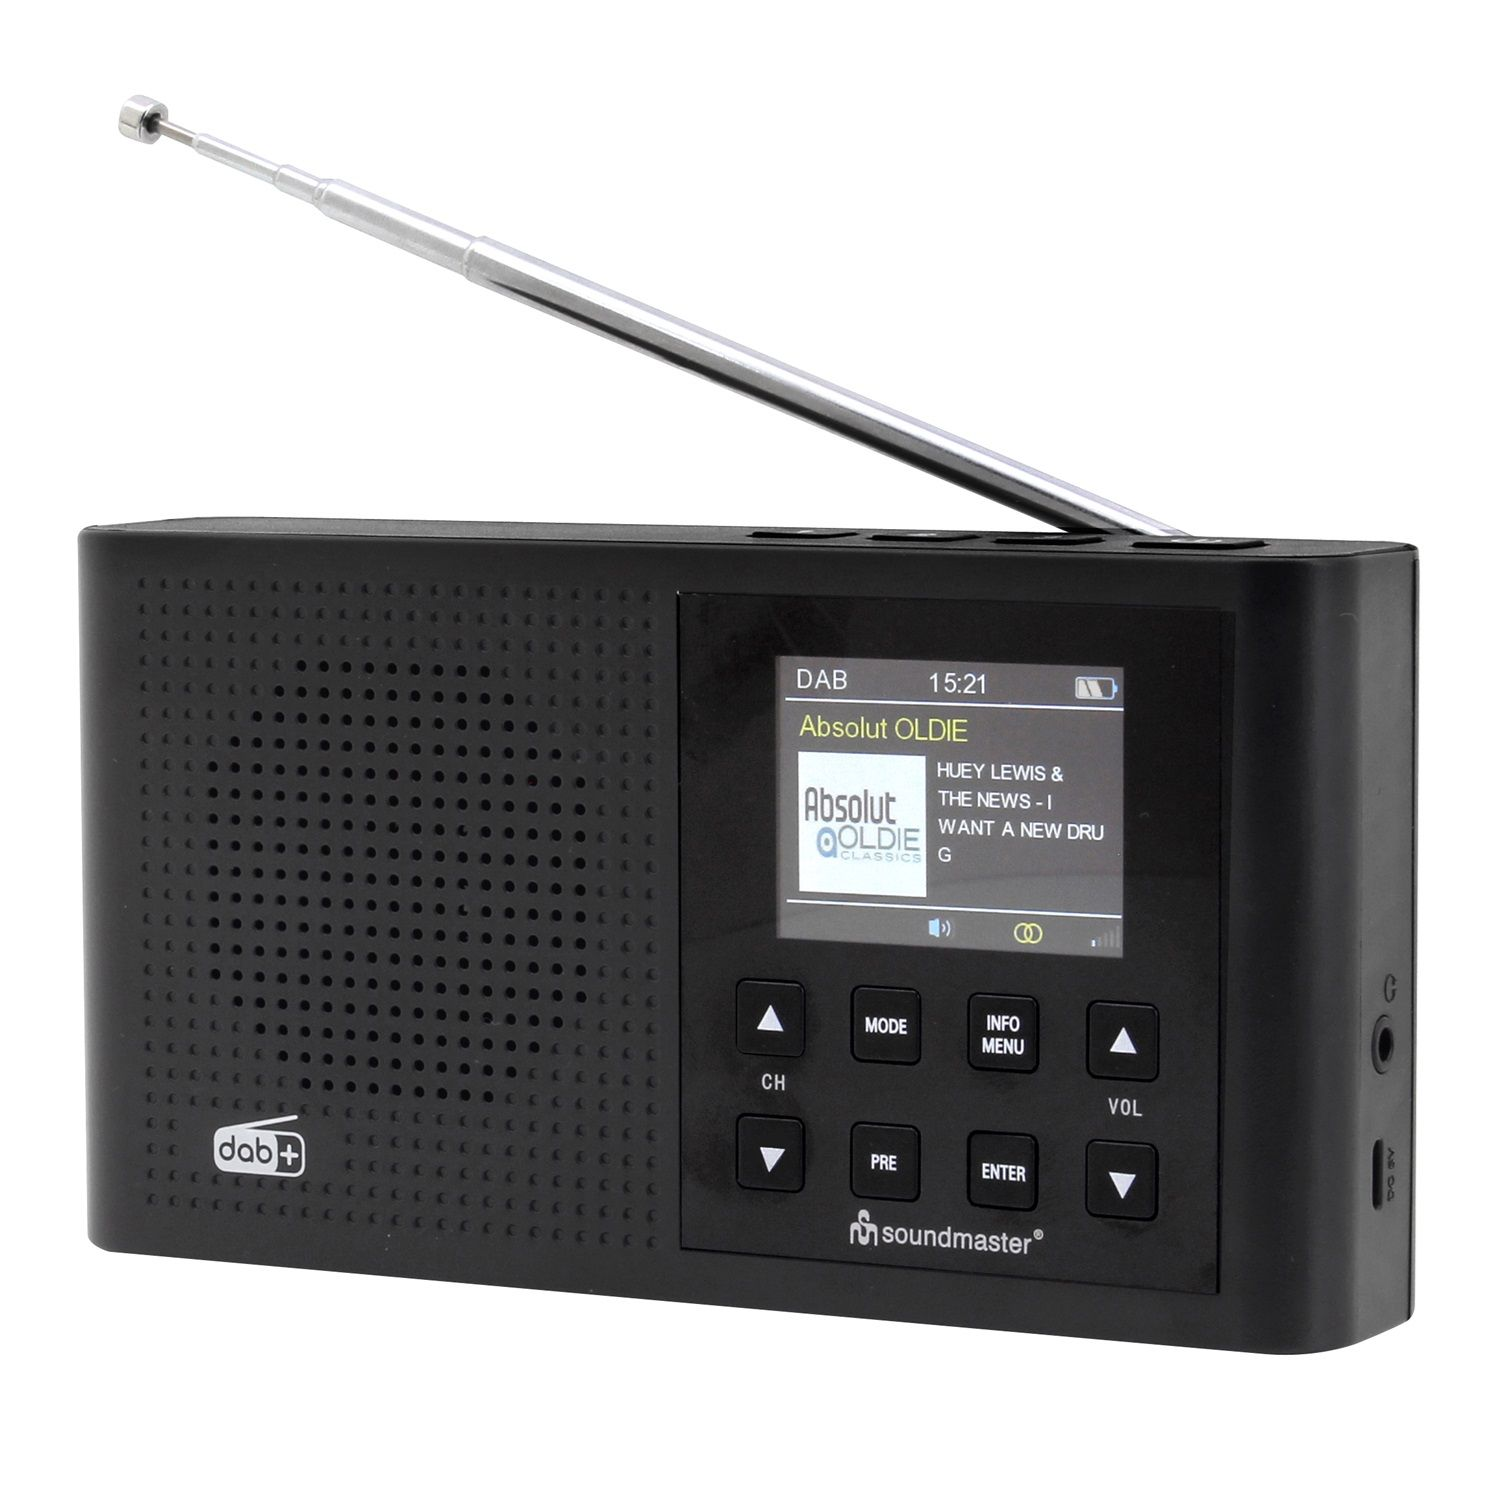 SOUNDMASTER DAB165SW Multifunktionsradio, DAB+, FM, Bluetooth, FM, DAB+, AM, DAB, schwarz